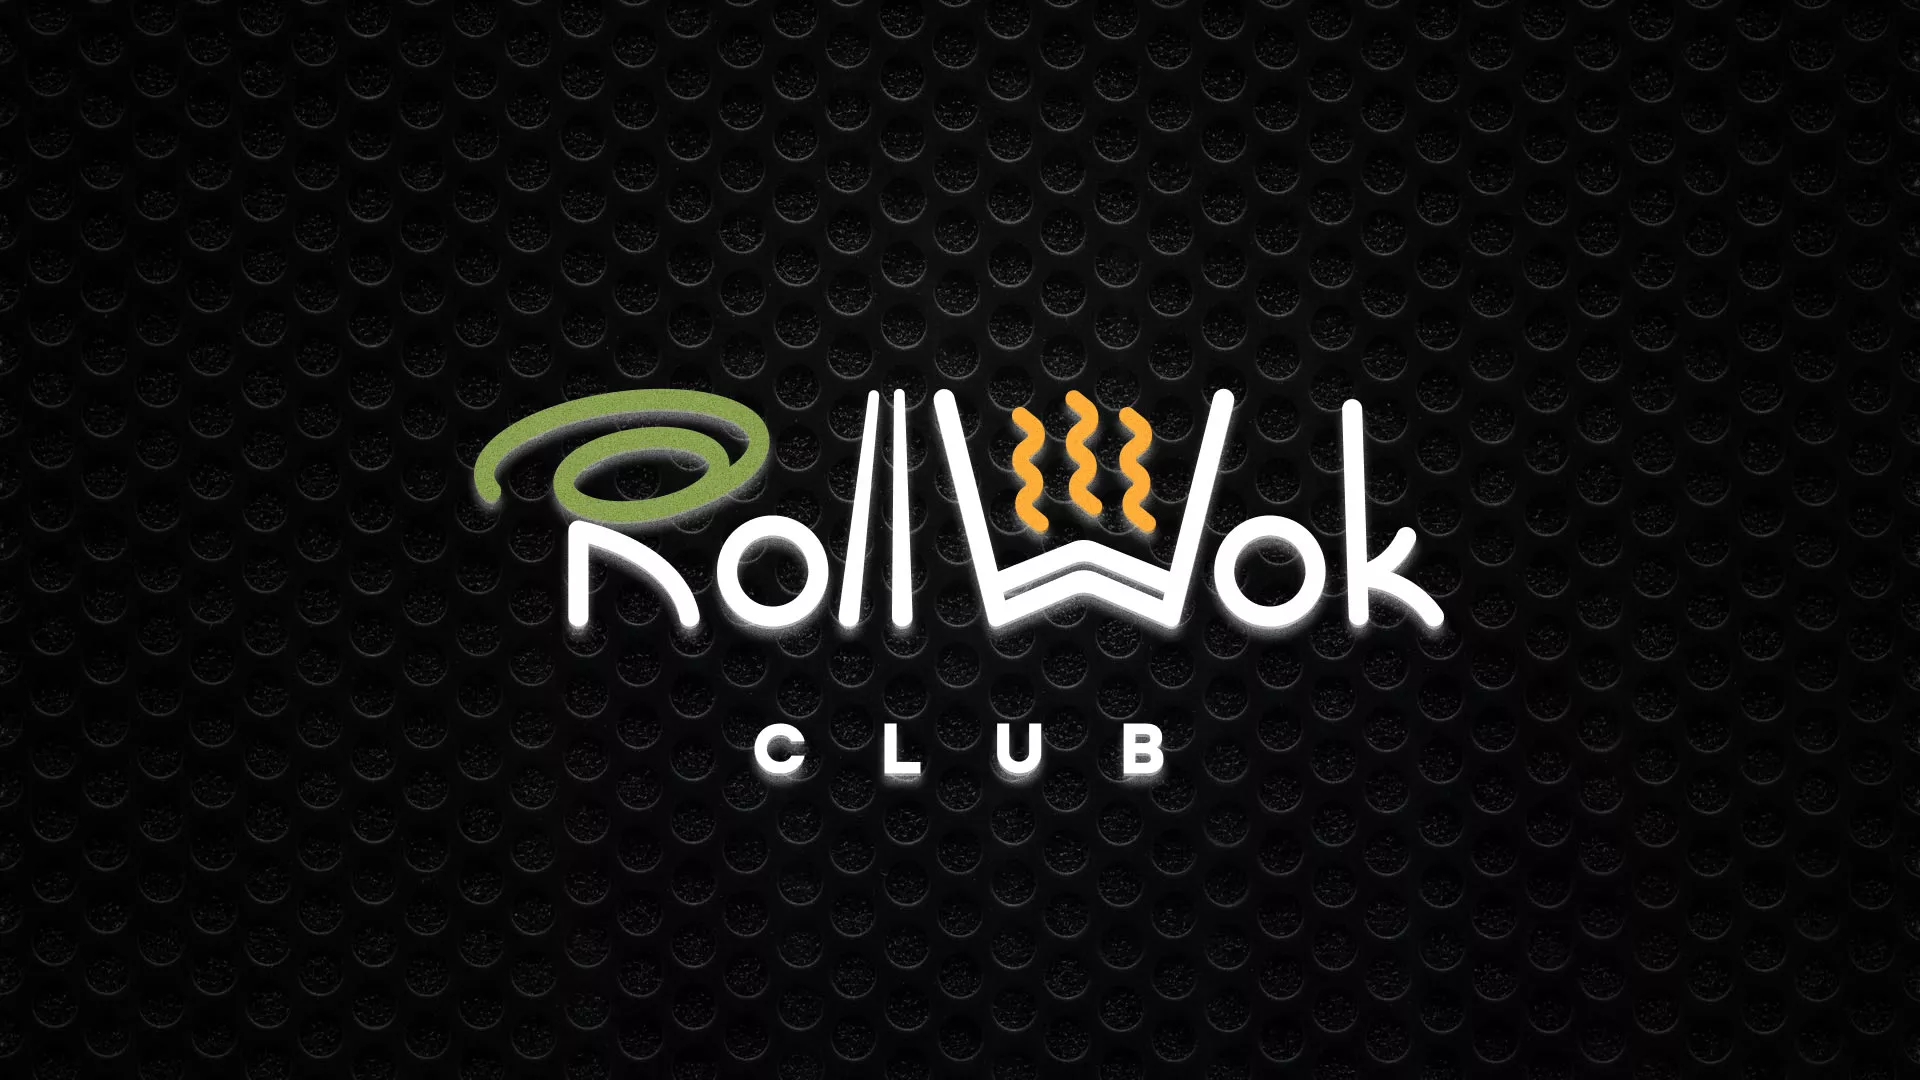 Брендирование торговых точек суши-бара «Roll Wok Club» в Кяхте